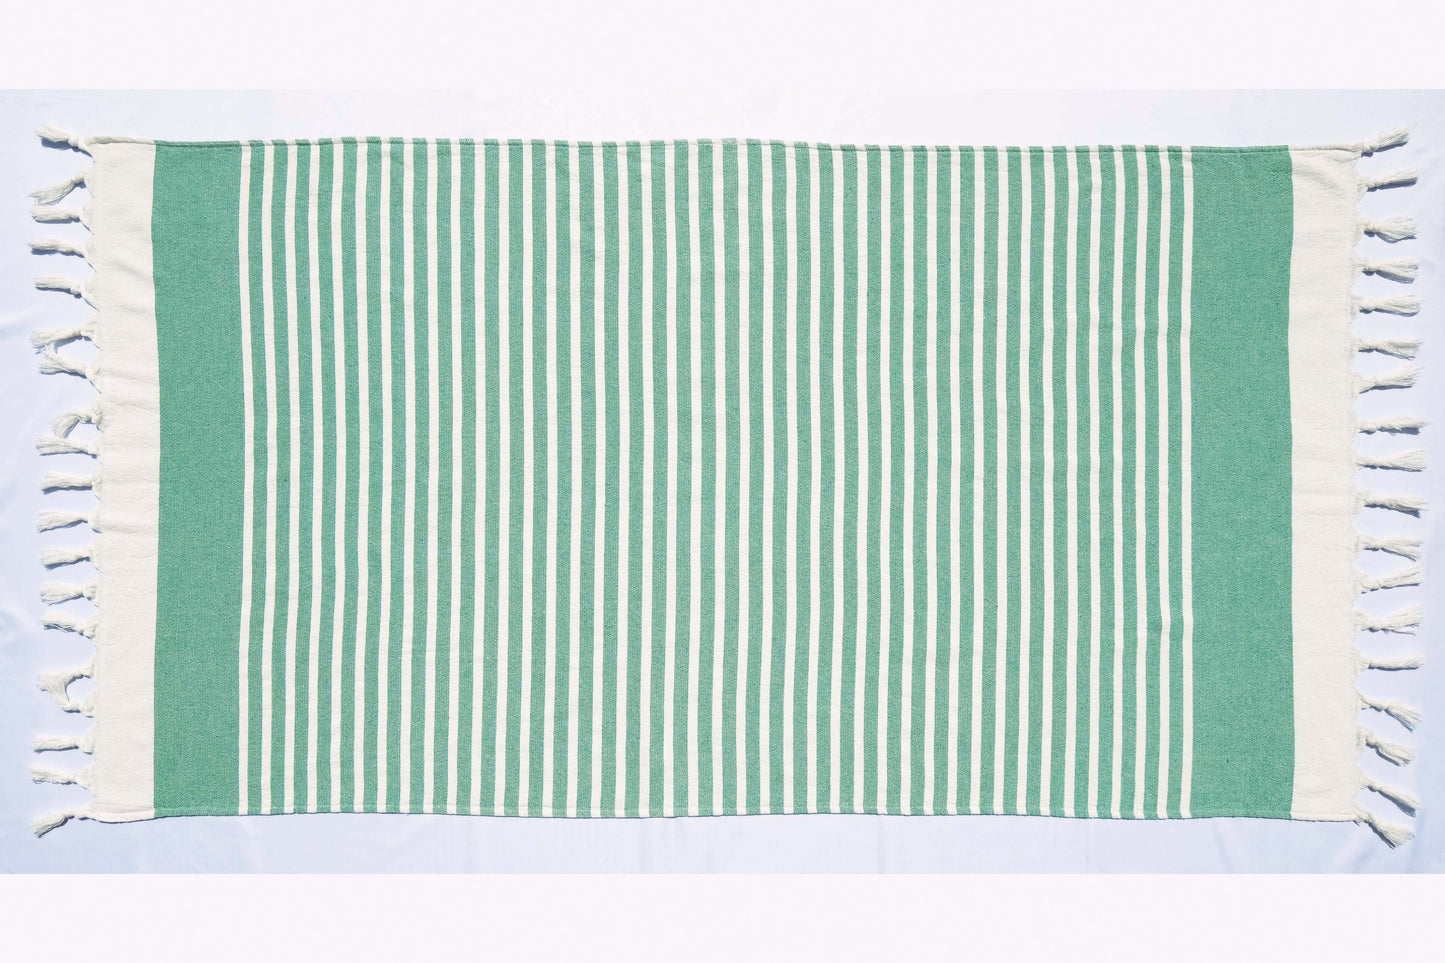 Mahawu. EINSEITIG farbige horizontale Streifen auf schlichtem Weiß. In 6 Farben.